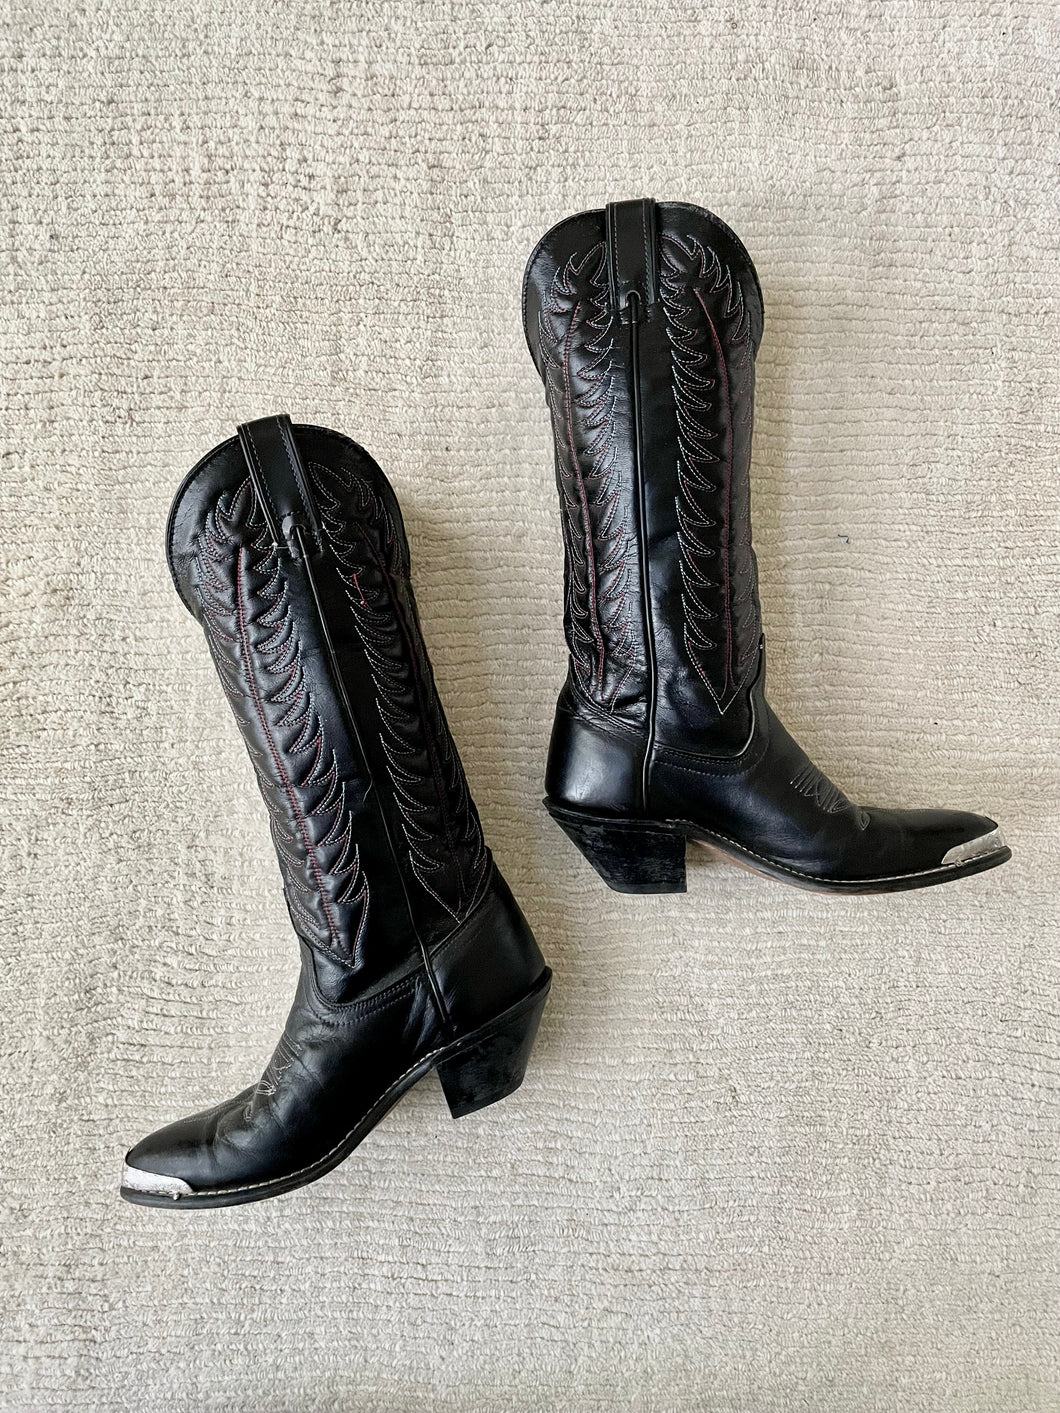 vintage onyx cowboy boots